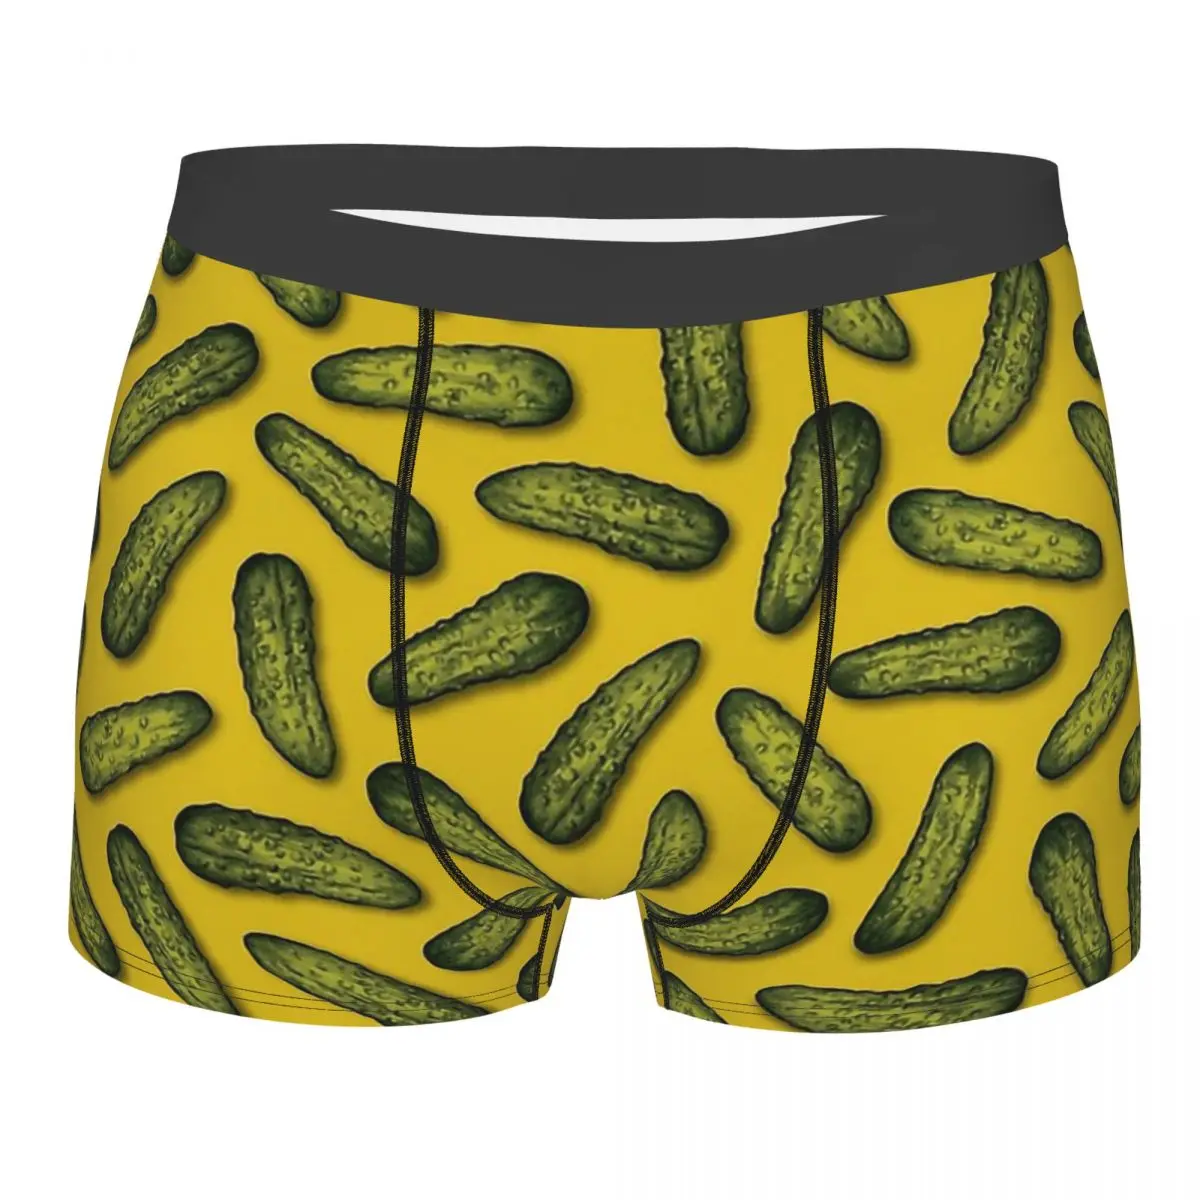 

Трусы A Plethora Of Pickles мужские, дышащие брифы с рисунком огурца, зеленая и желтая кожа, нижнее белье